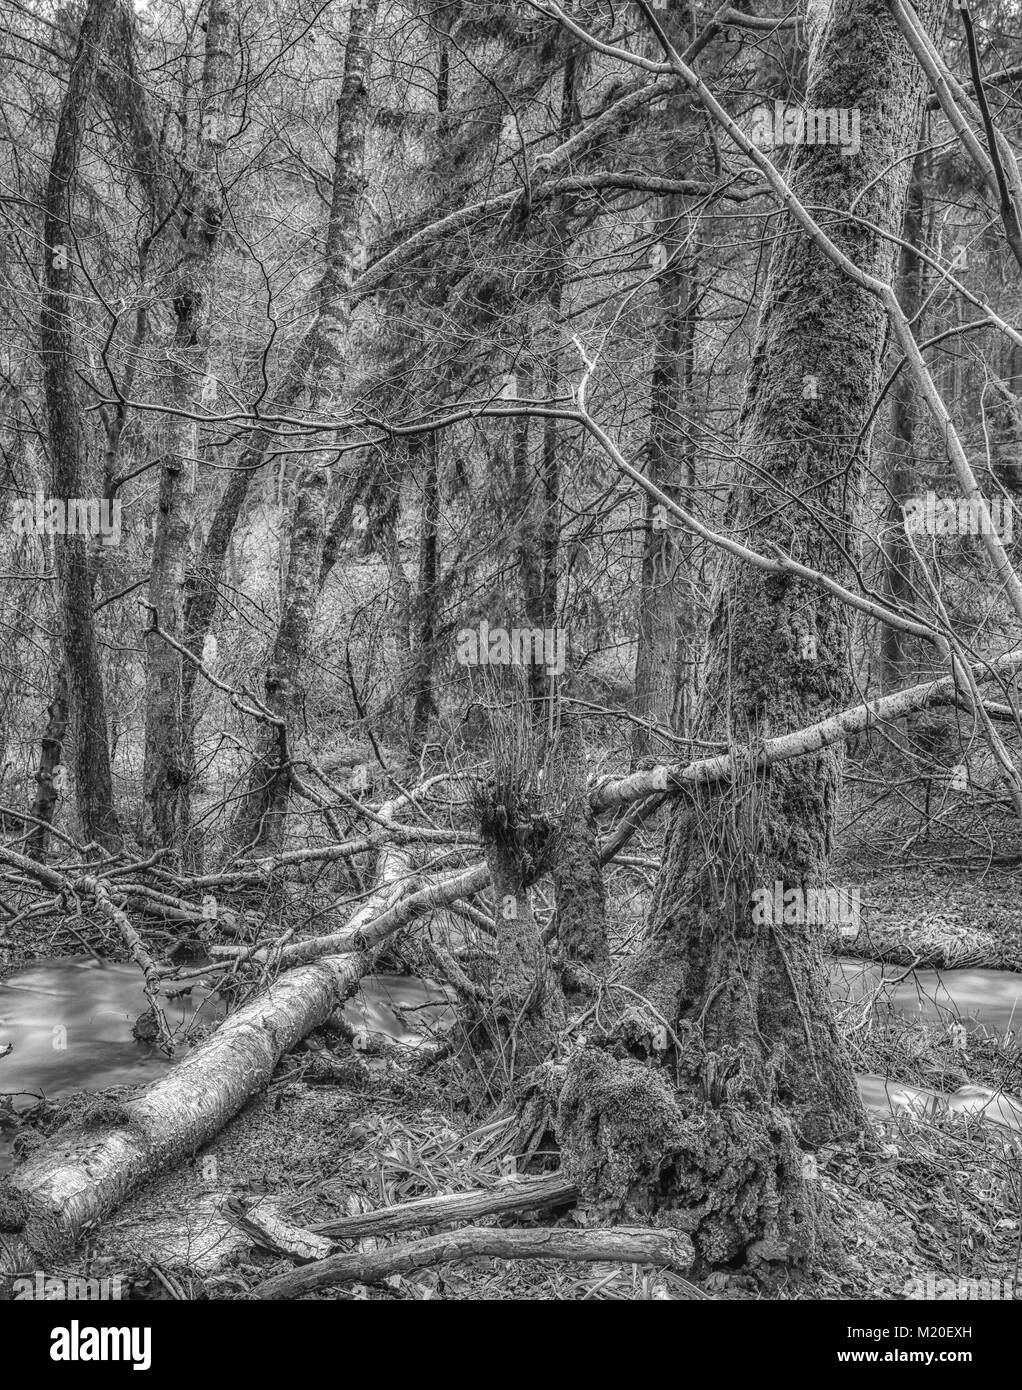 Schwarzweiß-Fotos mit langer Belichtungszeit eines wilden unberührten Wald mit umgestürzten Bäumen. Moss, Unterholz, Farn, Gras und zwei kleine Flüsse, Herbst oder Winter Stockfoto